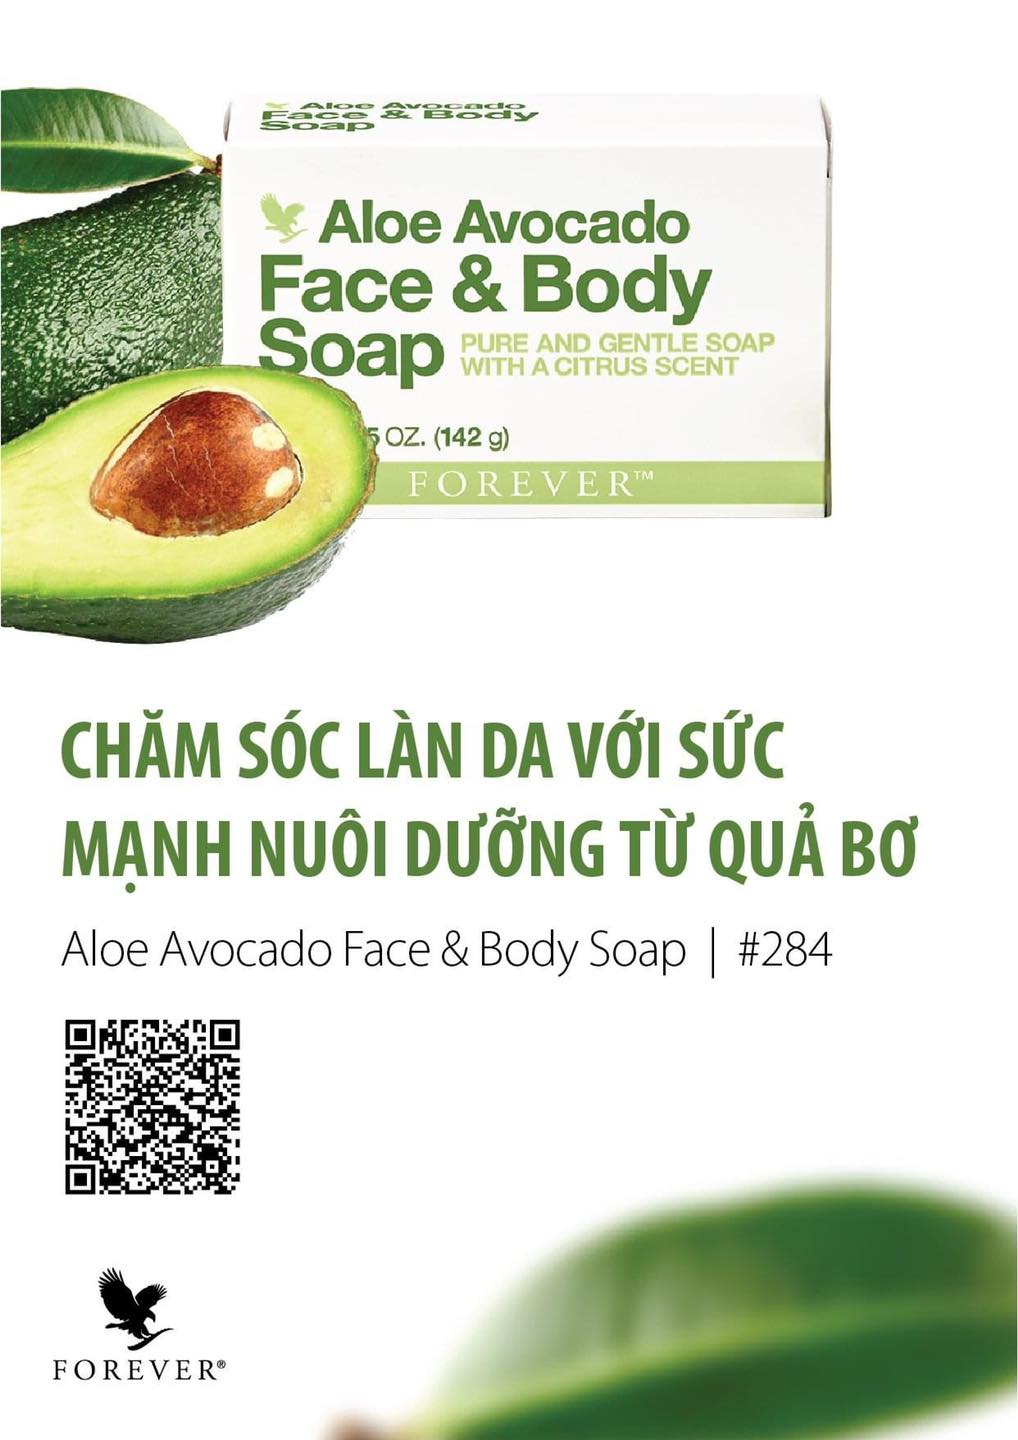 Aloe Avocado Face & Body Soap 284 Flp : Chăm Sóc Làn Da Với Sức Mạnh Nuôi Dưỡng Từ Quả Bơ.